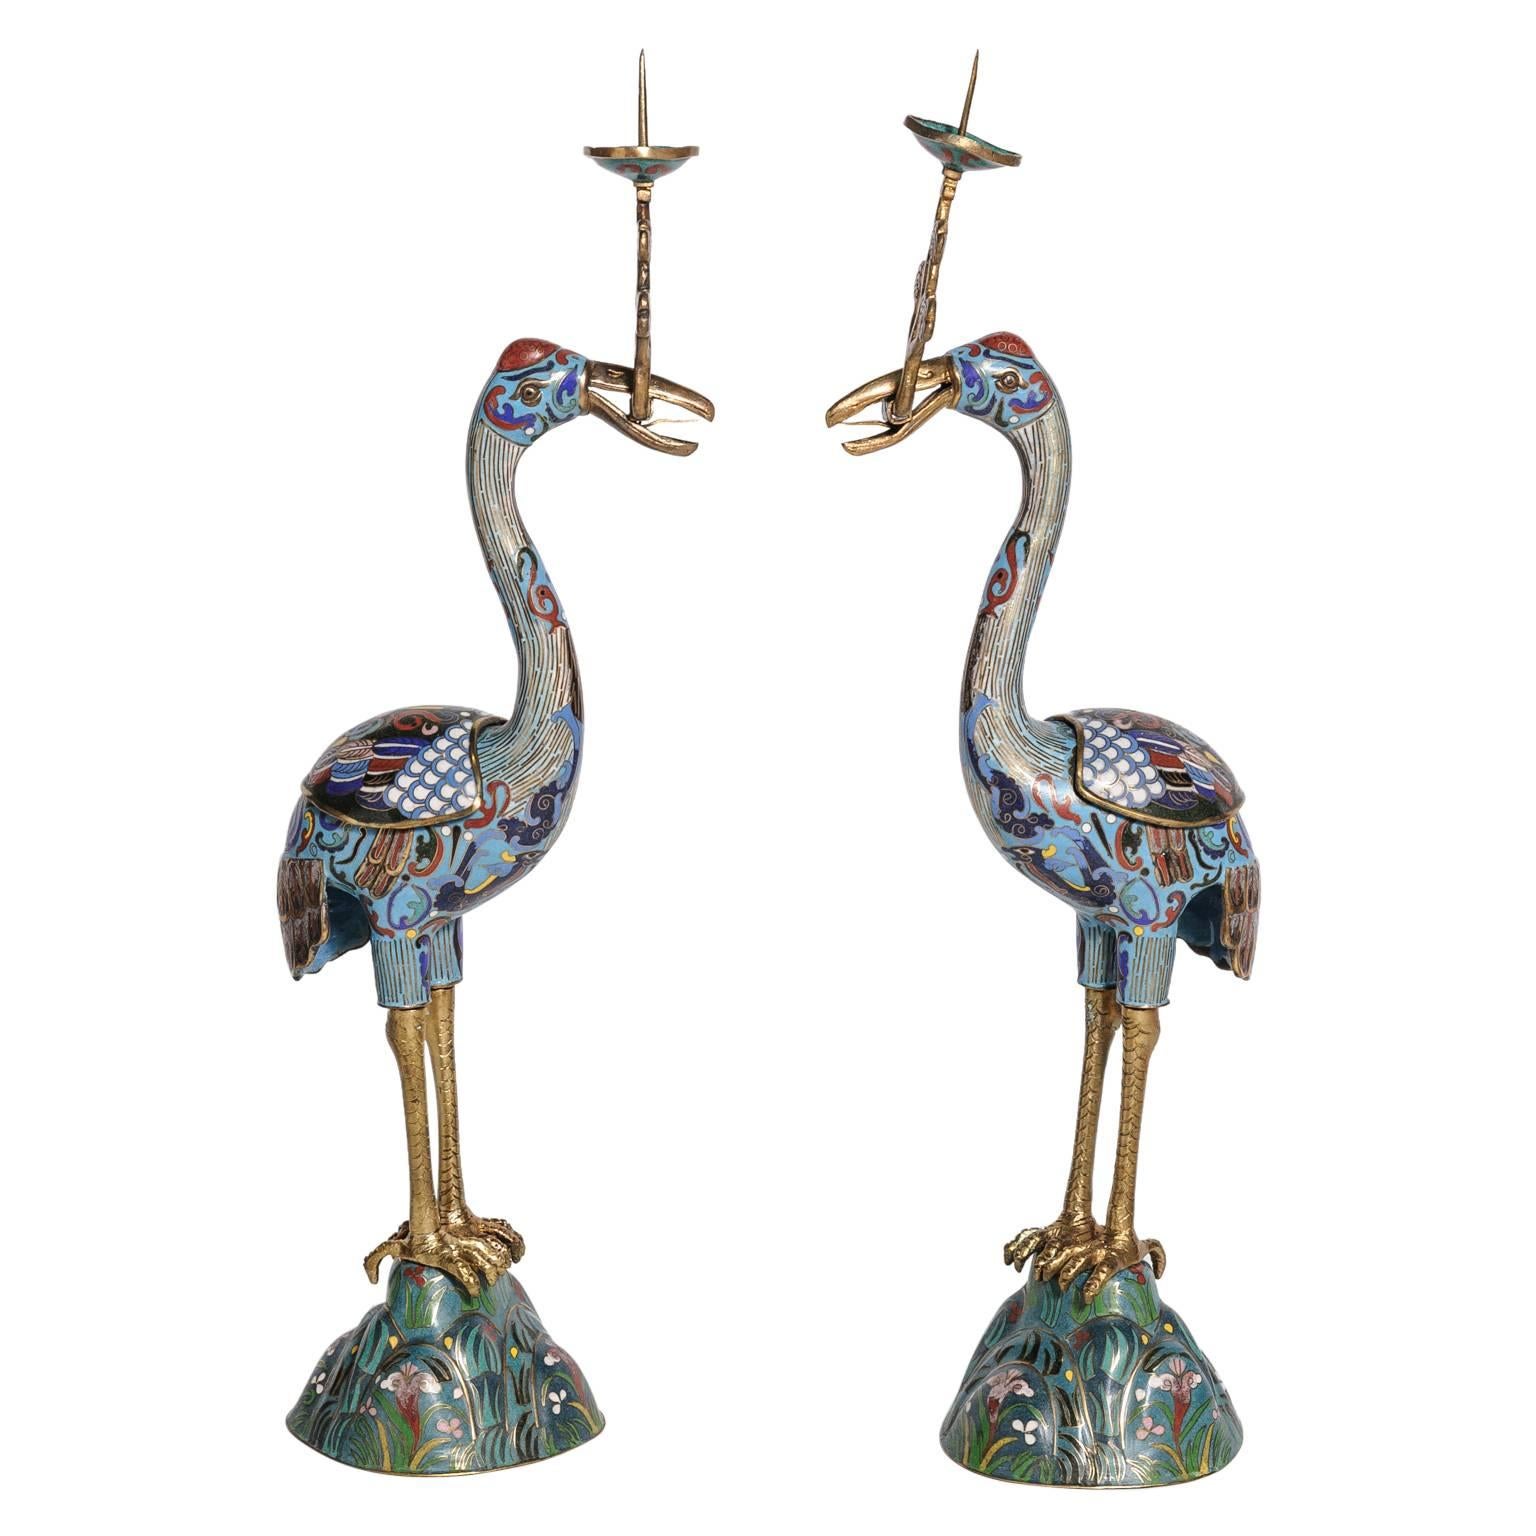 Pair of Cloisonné "Crane" Motif Prickets